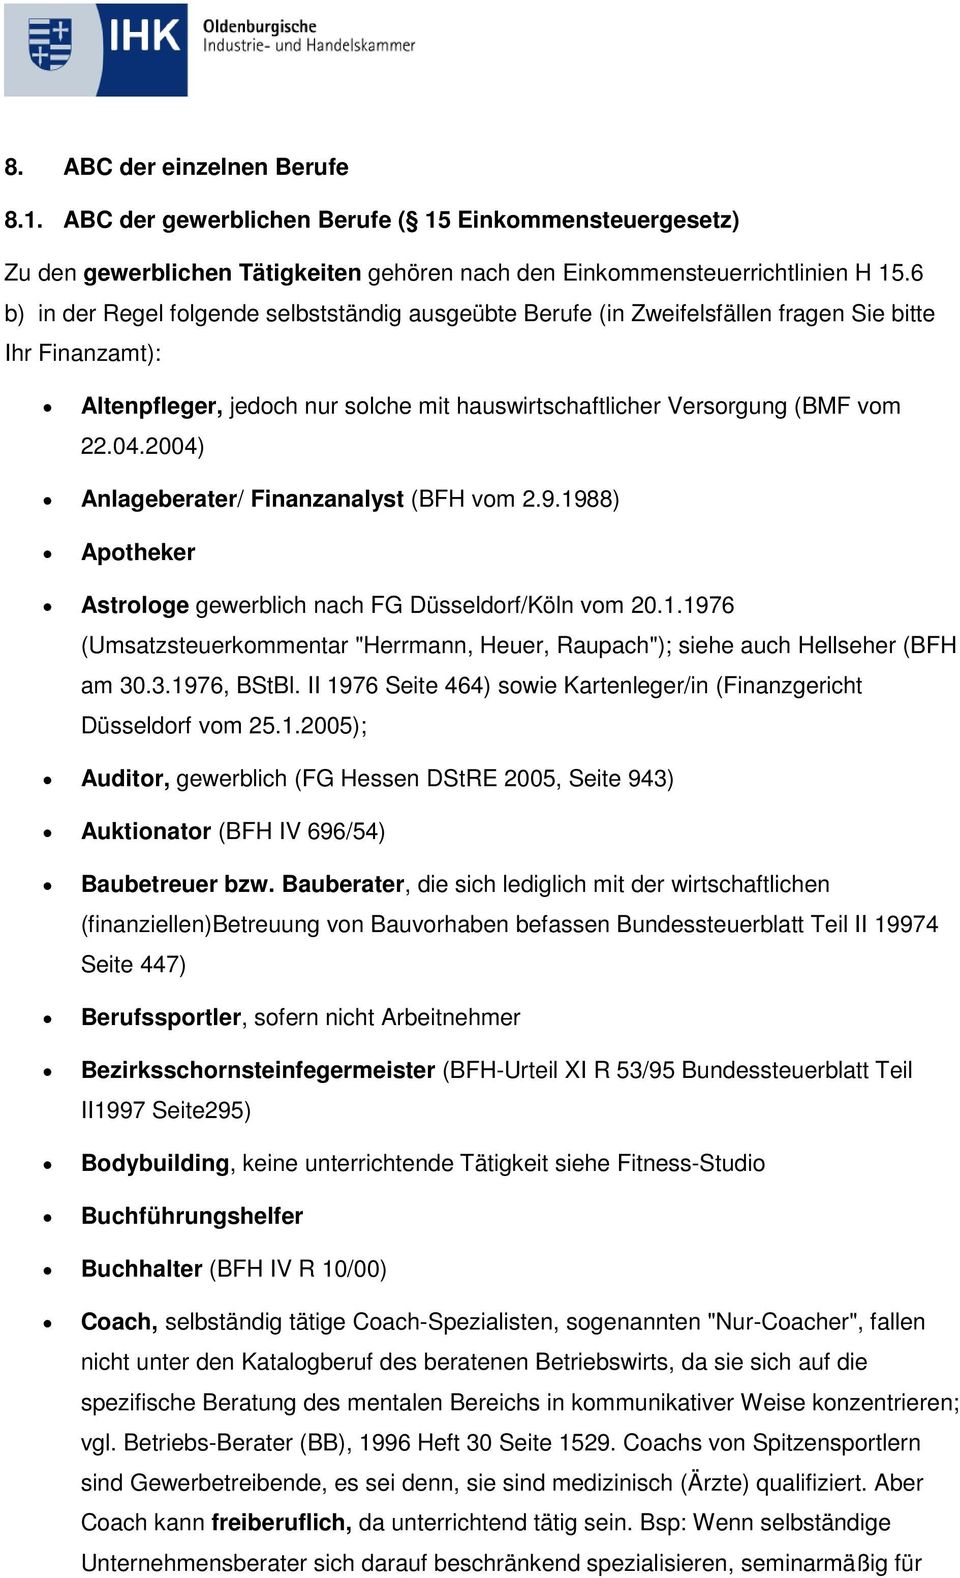 2004) Anlageberater/ Finanzanalyst (BFH vom 2.9.1988) Apotheker Astrologe gewerblich nach FG Düsseldorf/Köln vom 20.1.1976 (Umsatzsteuerkommentar "Herrmann, Heuer, Raupach"); siehe auch Hellseher (BFH am 30.